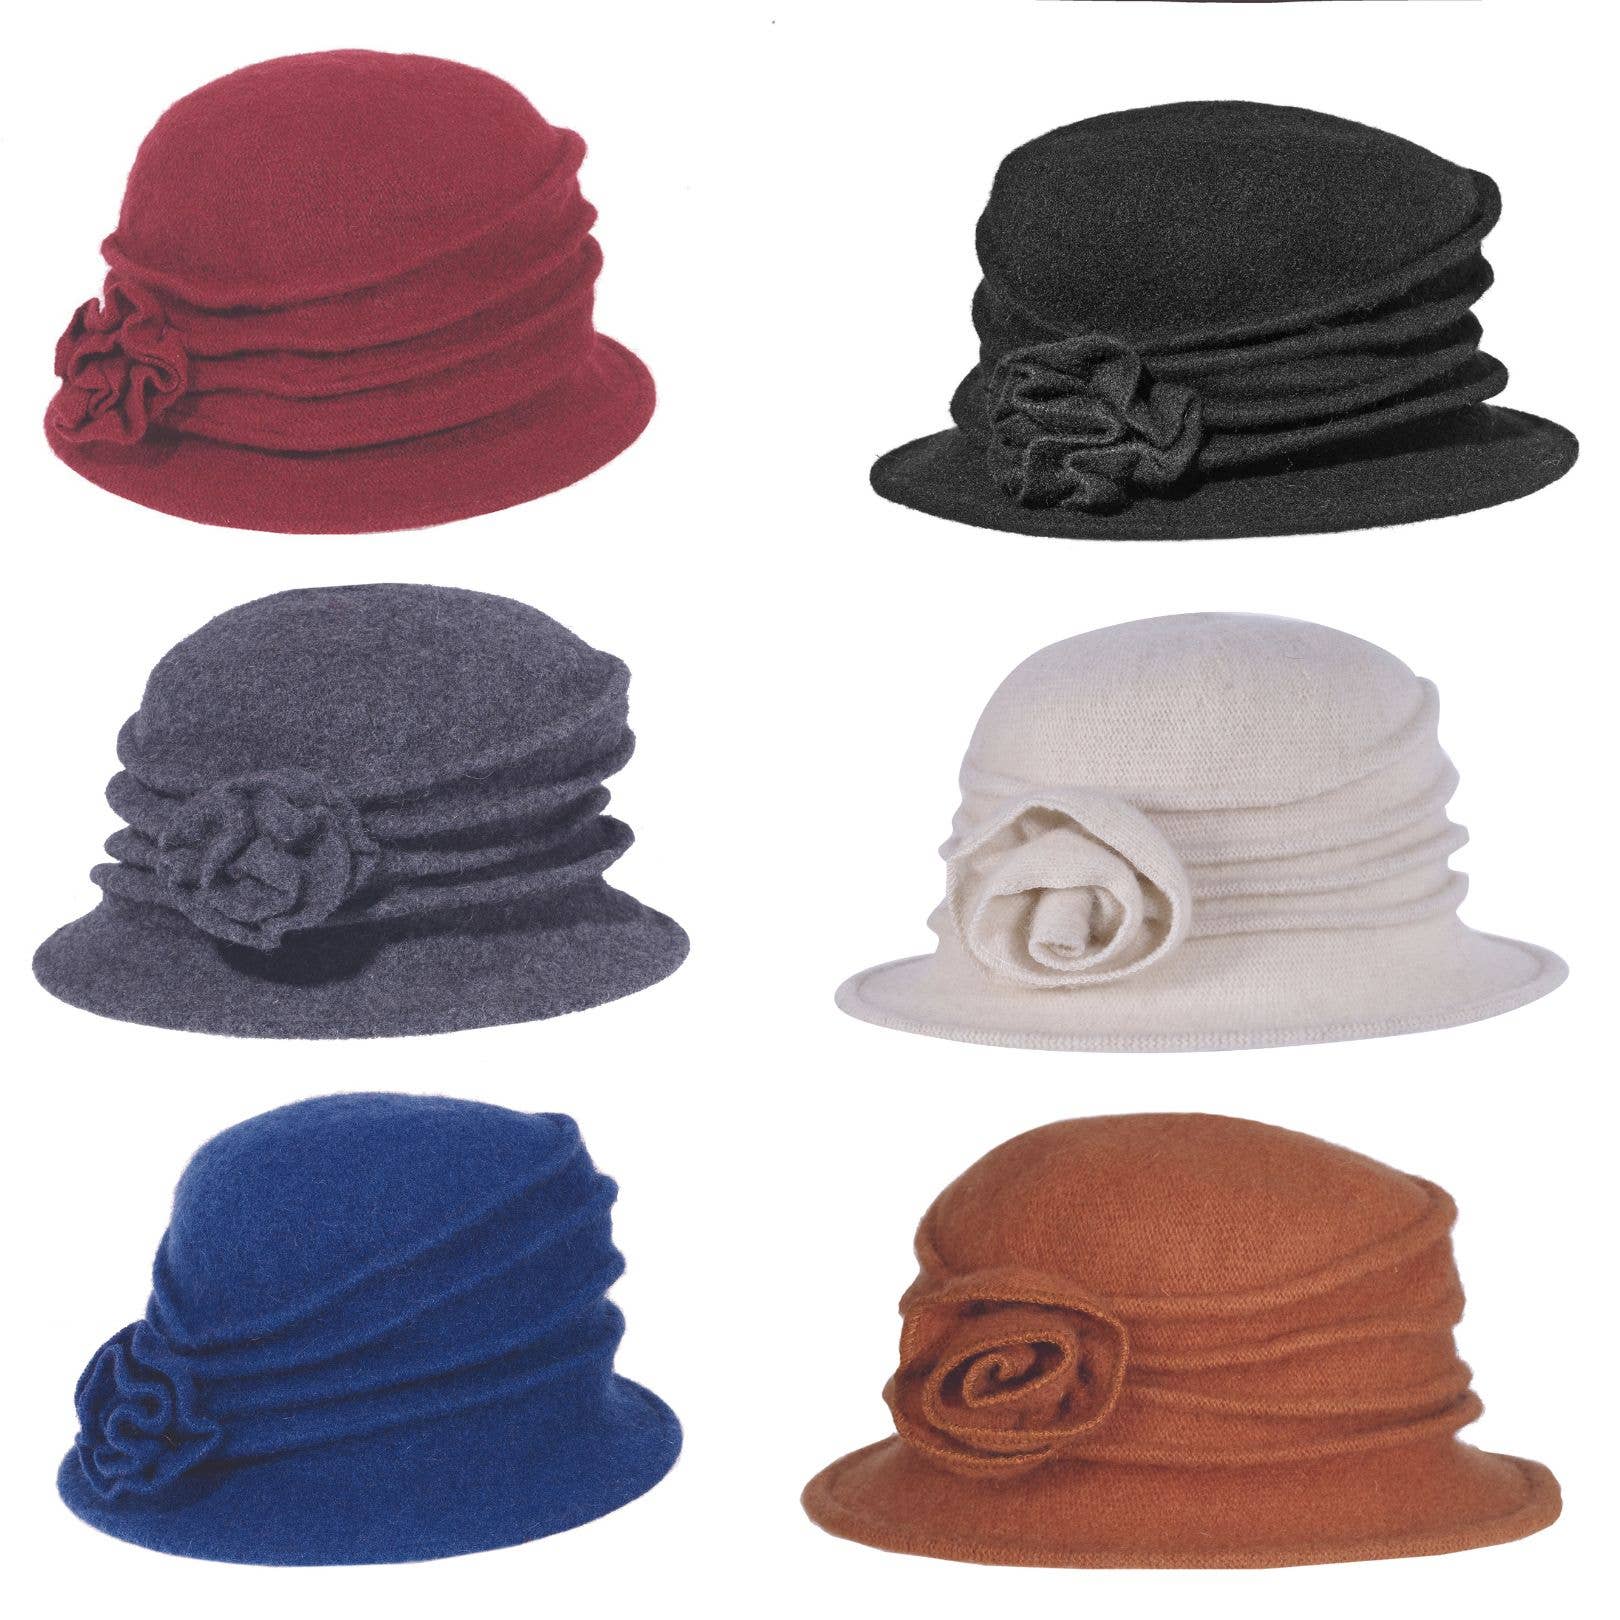 Wool Rose Cloche Hat: CHESTNUT